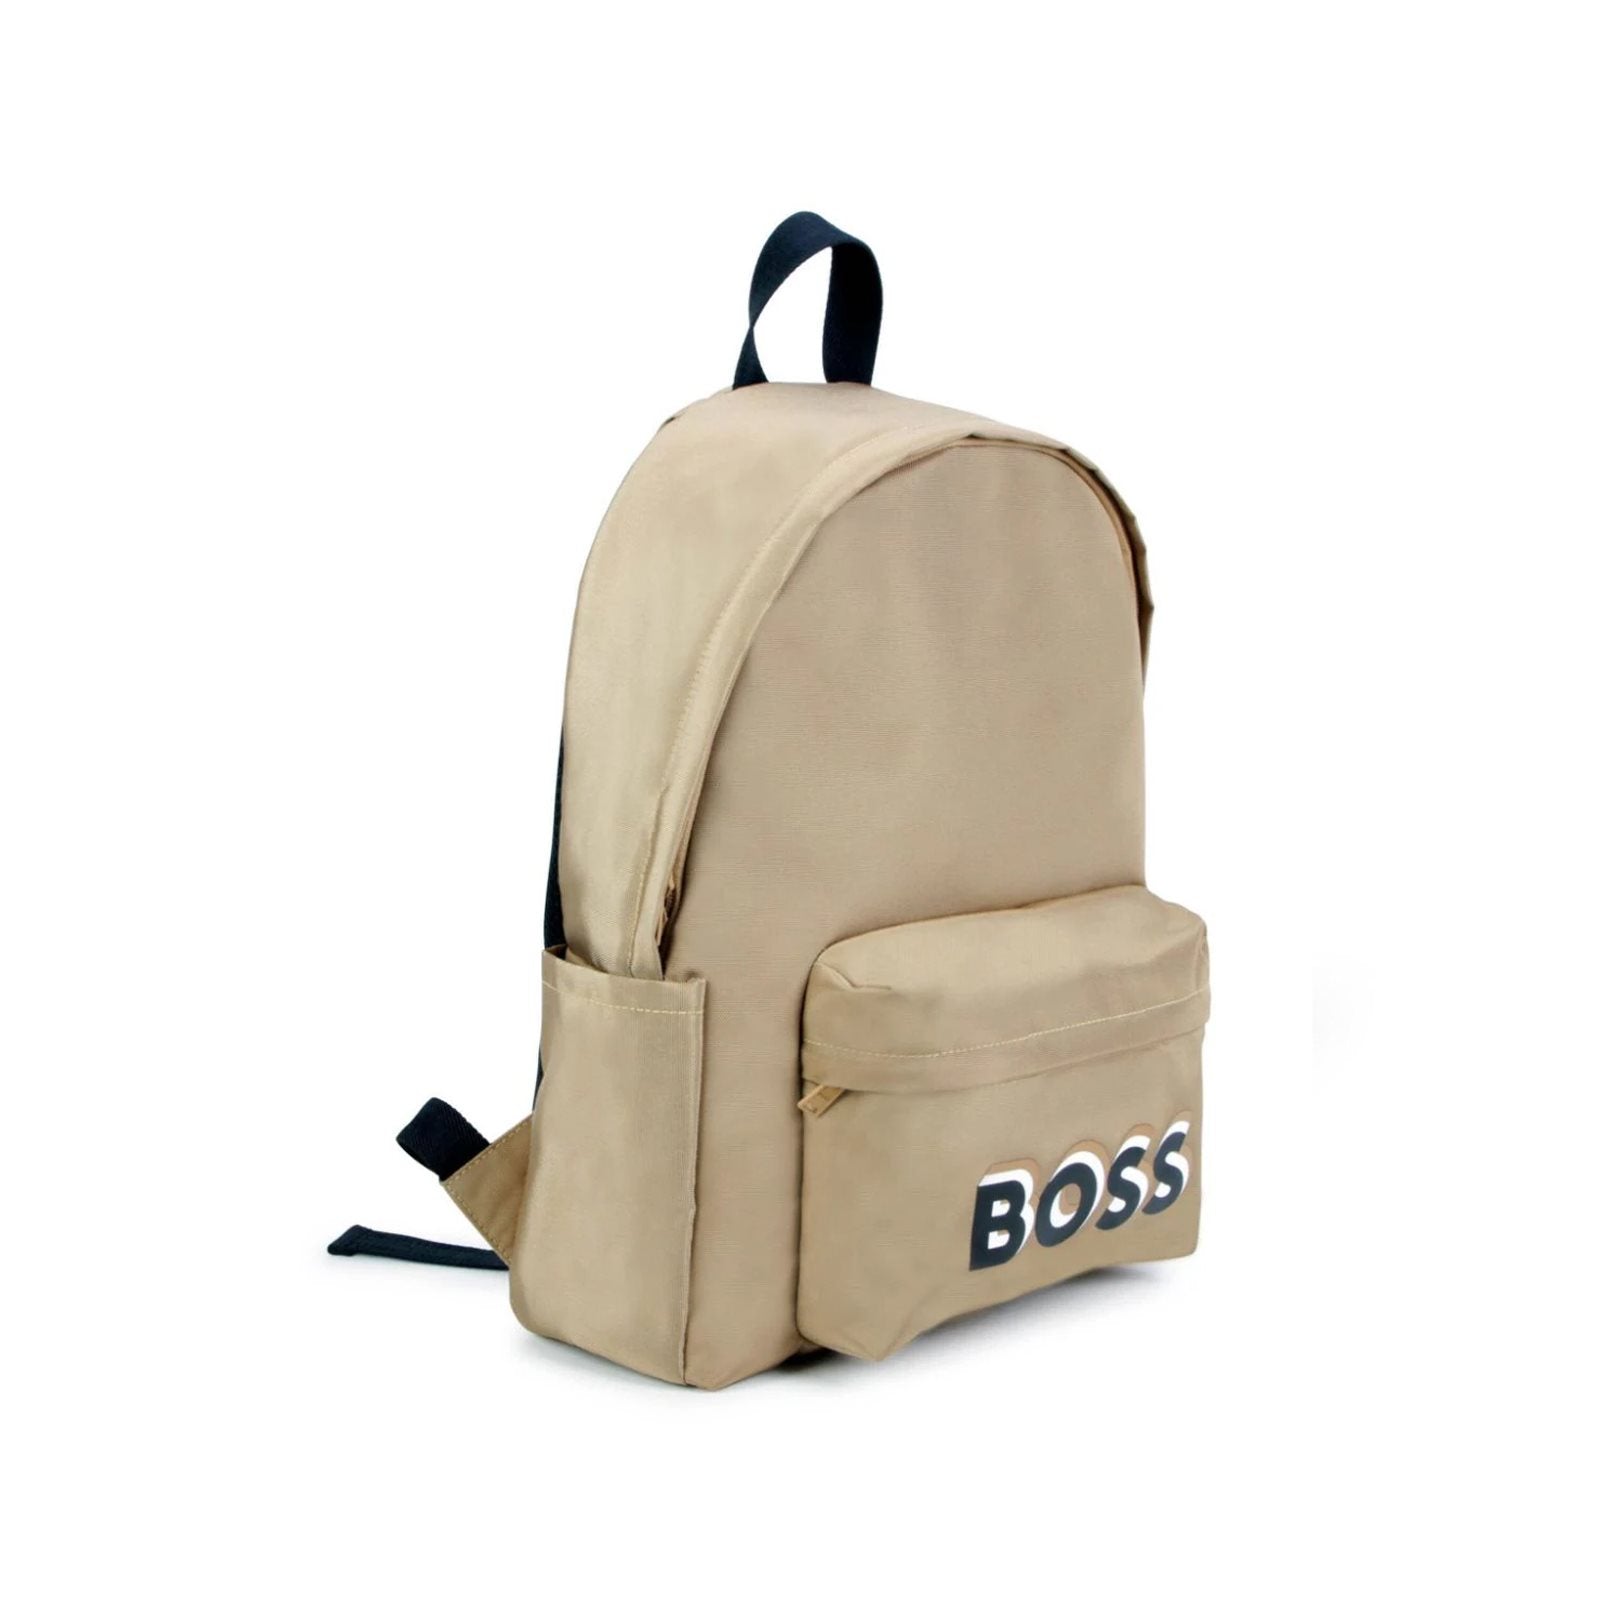 Multi-pocket backpack